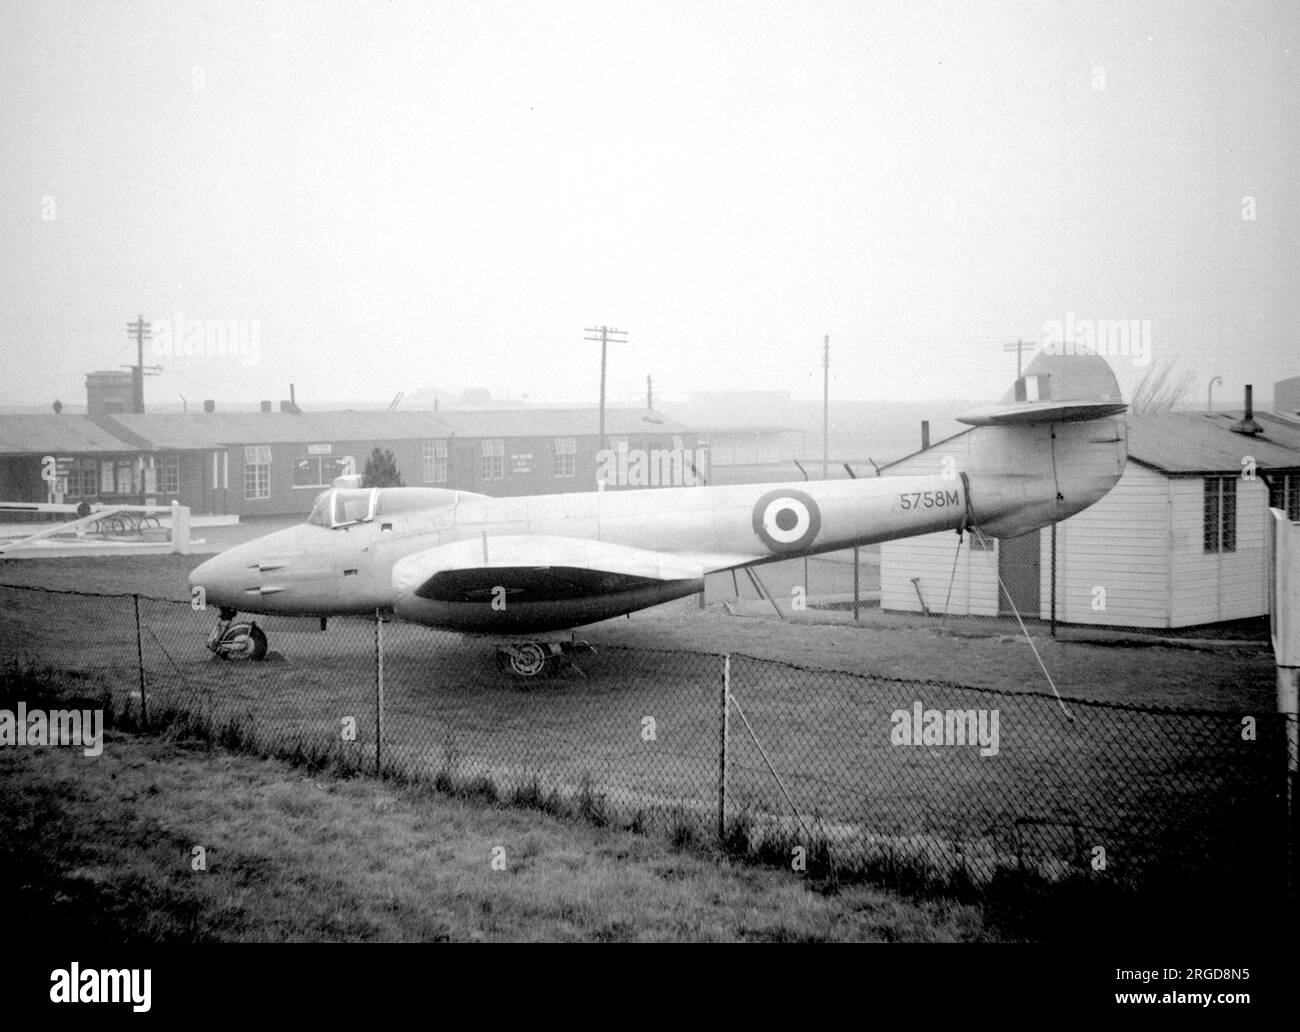 Gloster F.9/40 5758M / DG202/G, der erste der neun F.9/40s, die dem Gloster Meteor vorausgingen, auf der RAF Yatesbury am 31. März 1958. Stockfoto